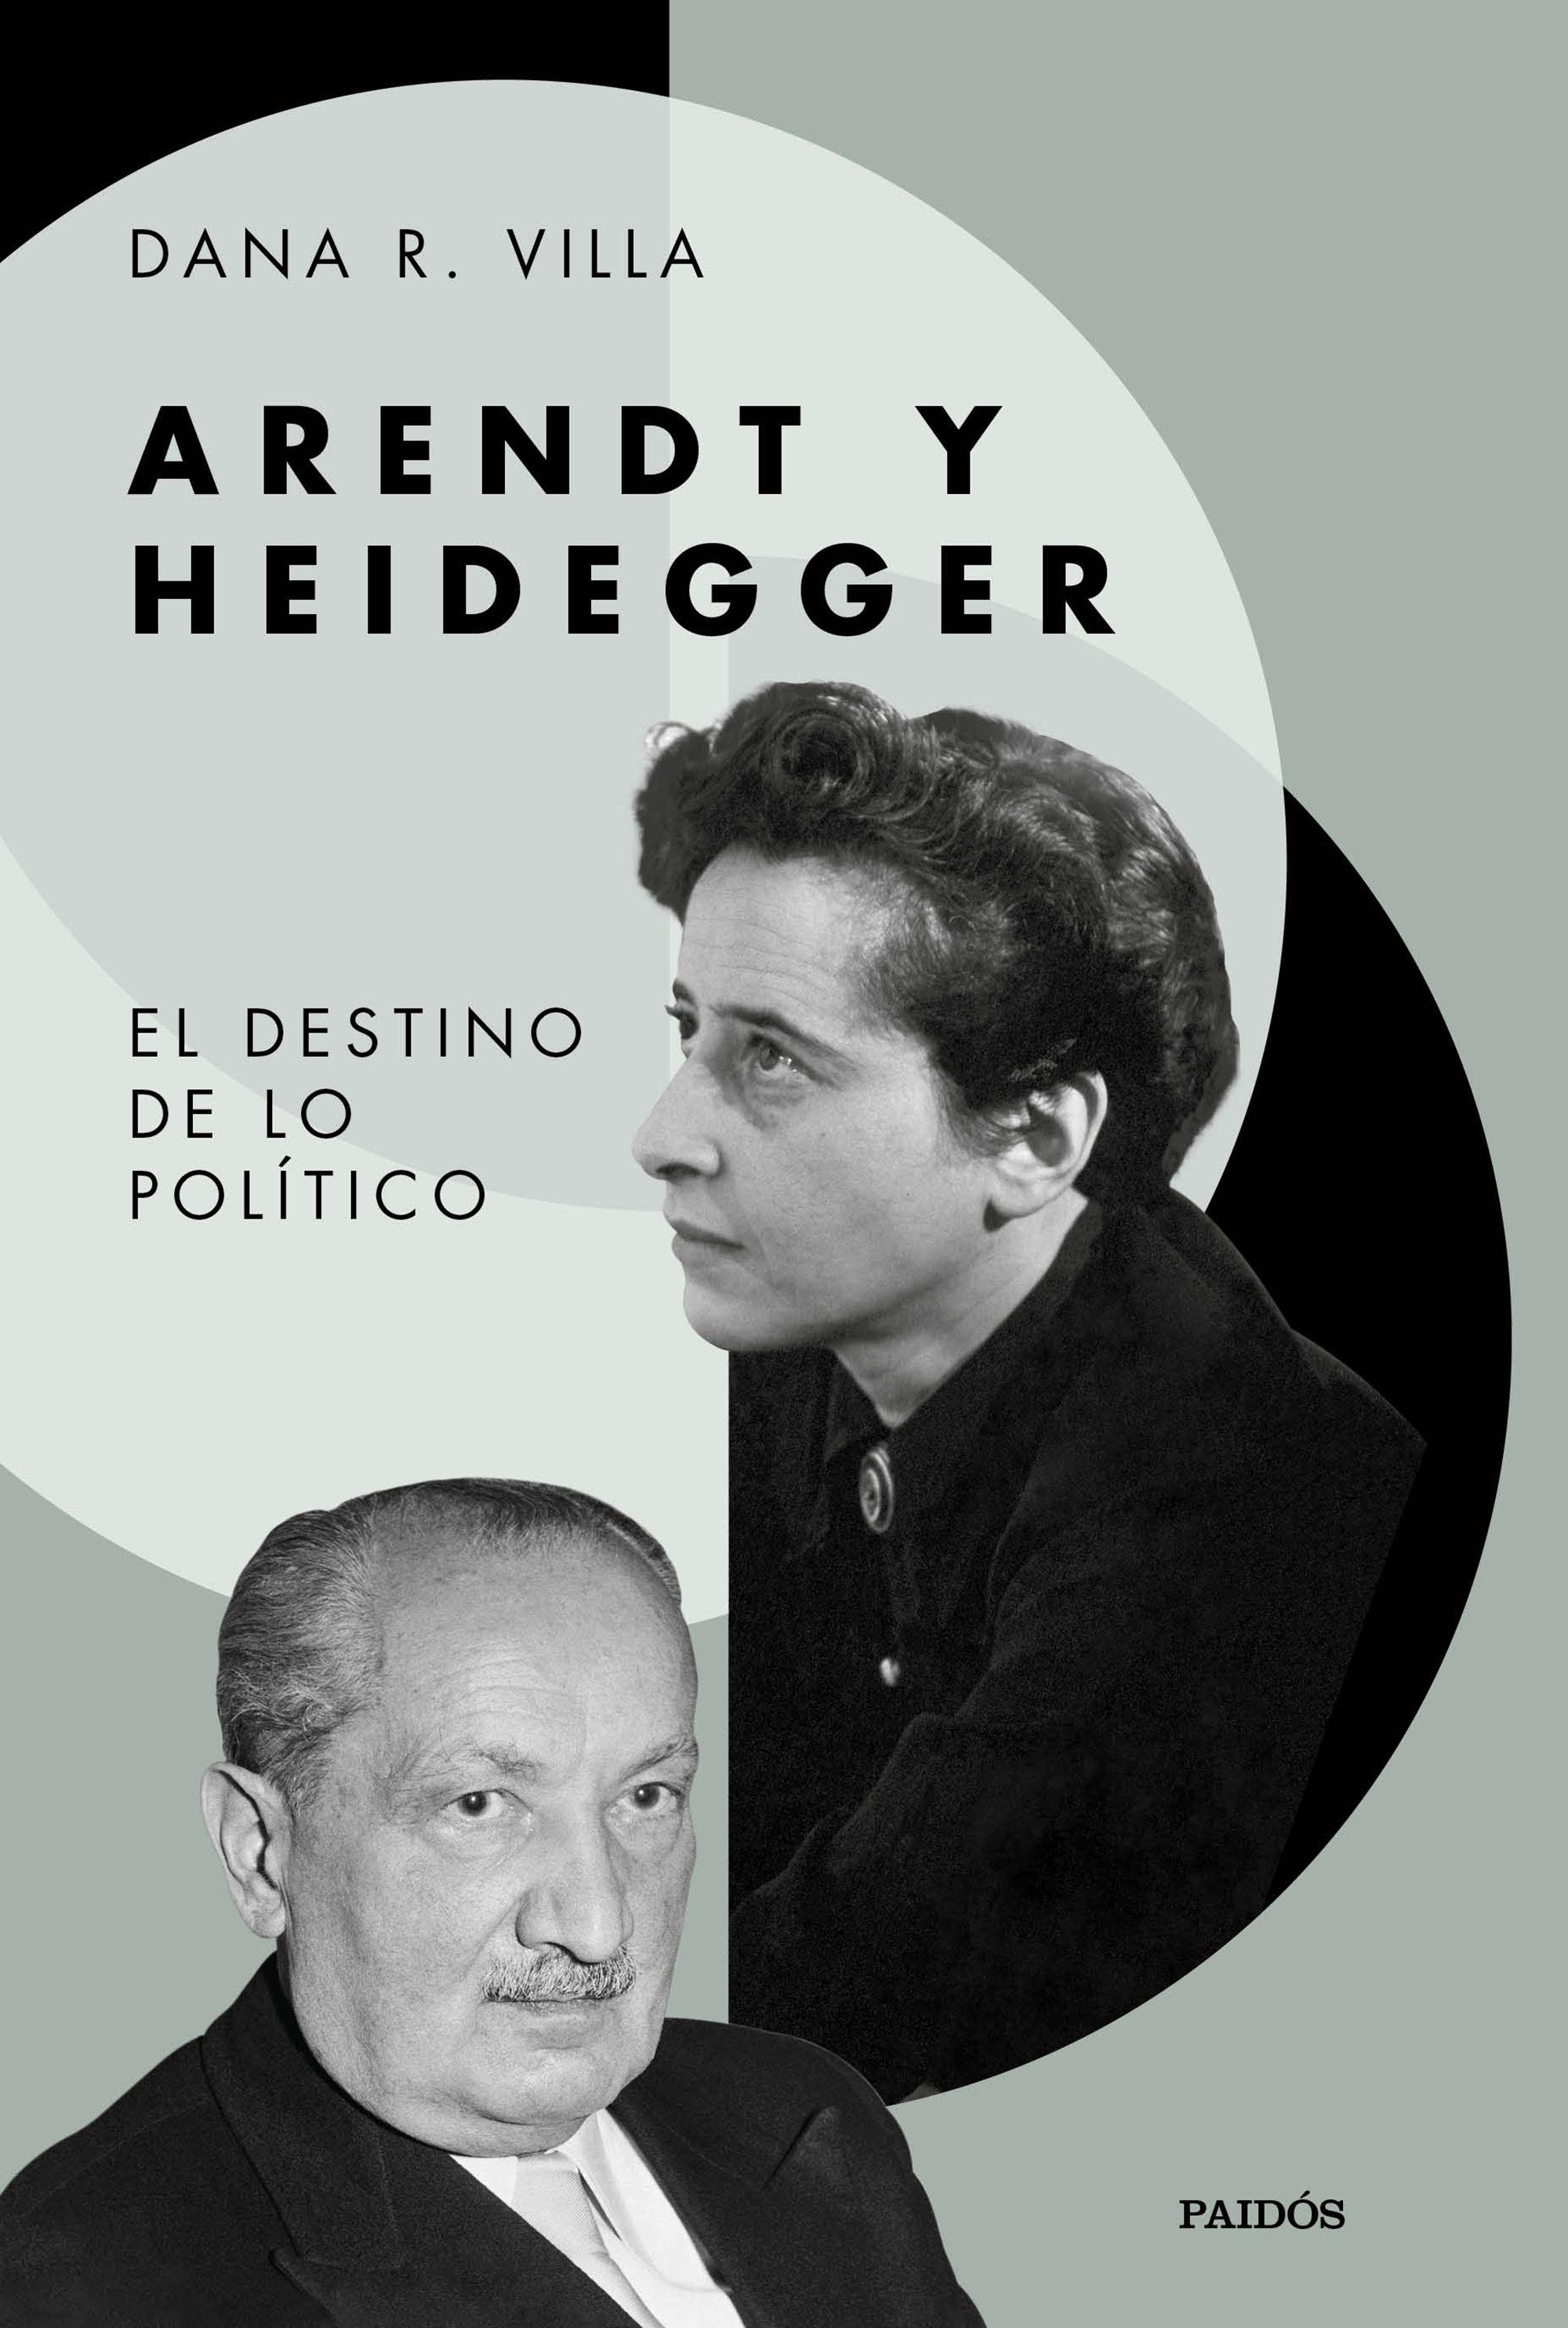 Arendt y Heidegger "El destino de lo politico"